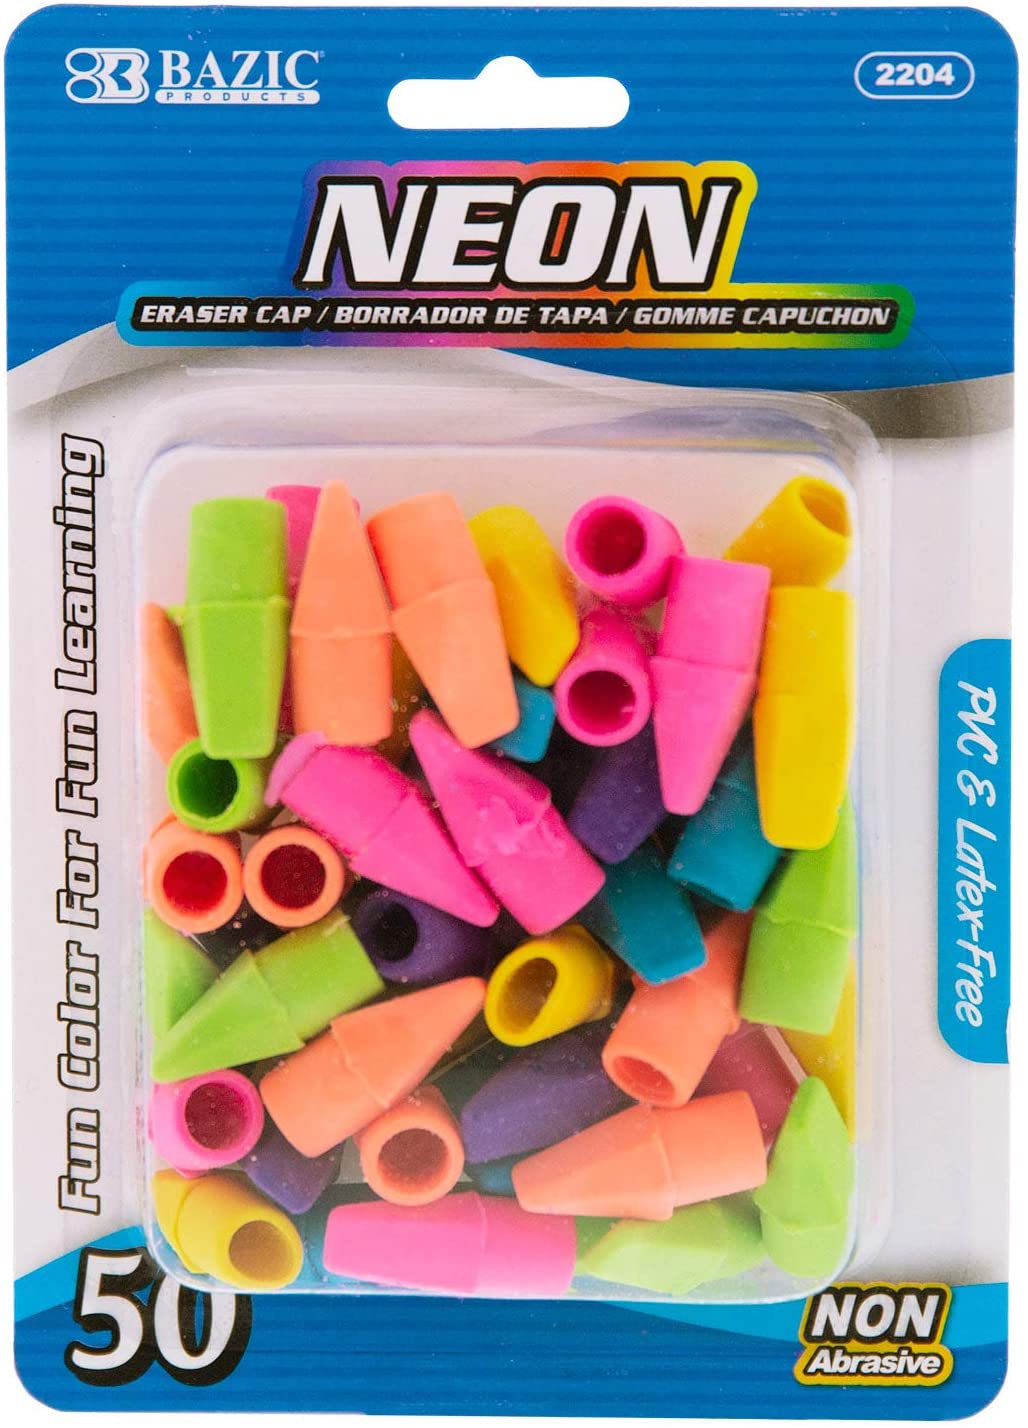 G8Central G8 Central Neon Pencil Top, Arrowhead Caps Tops Eraser